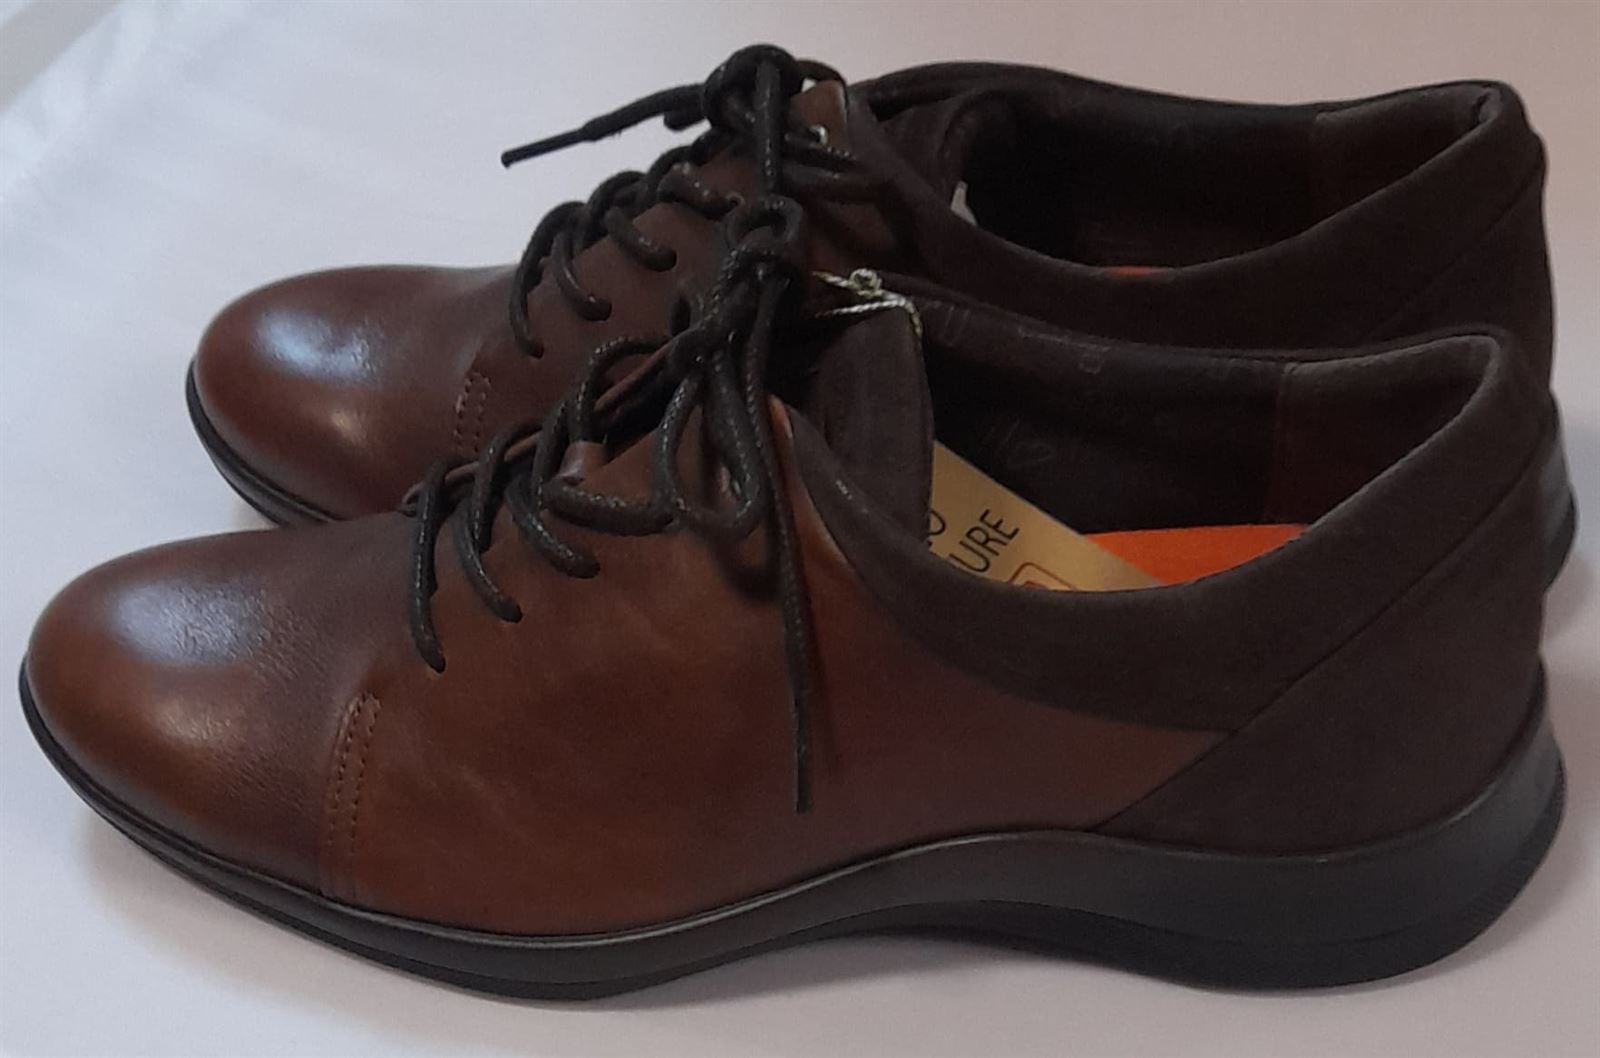 Zapato Fiordland marrón - Imagen 2